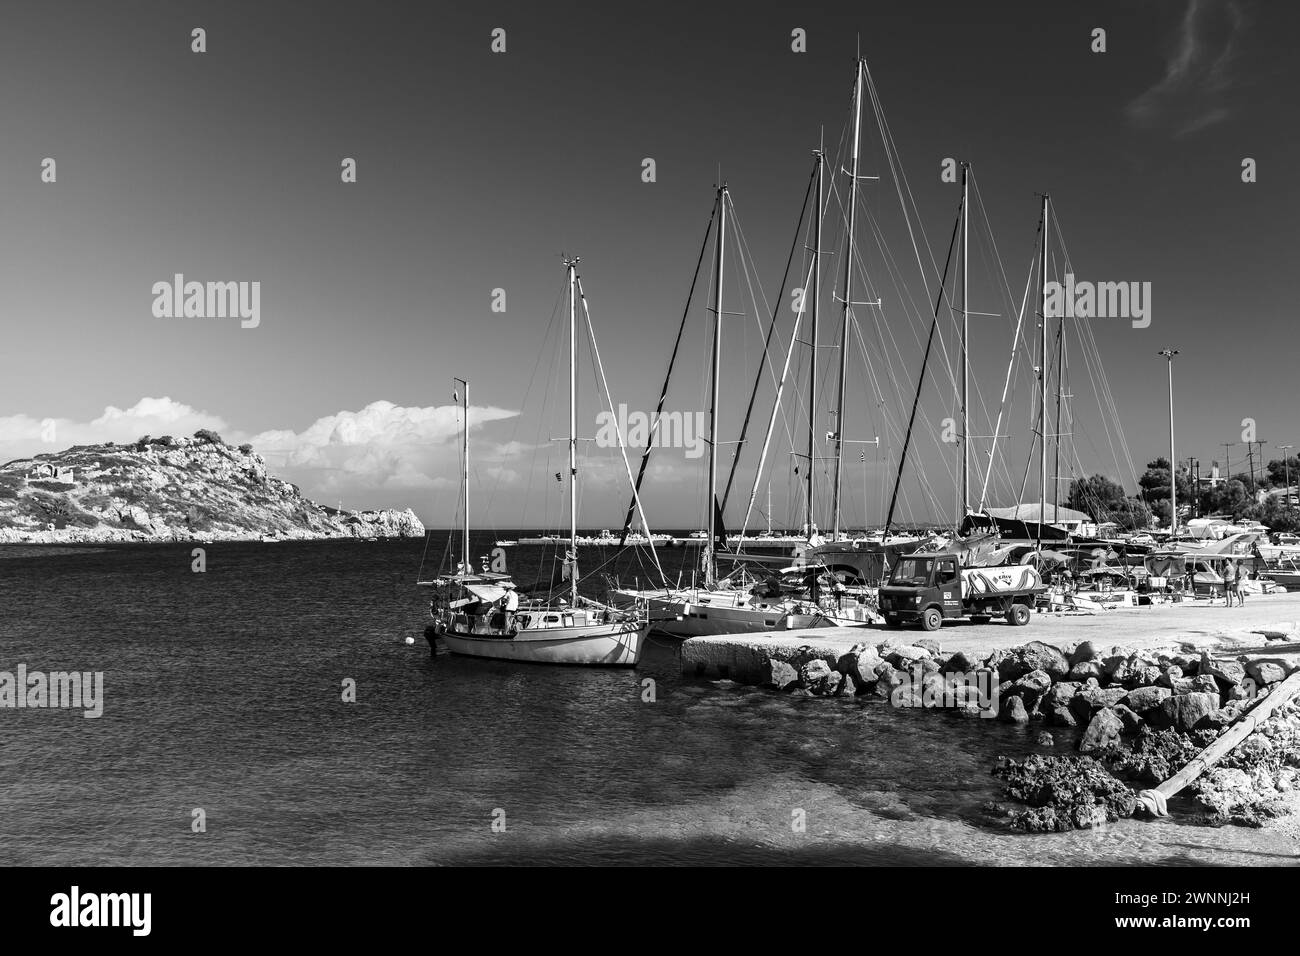 Zakynthos, Griechenland - 20. August 2016: Segelyachten und Sportboote liegen in Agios Nikolaos, einer schwarz-weißen Küstenlandschaft Stockfoto